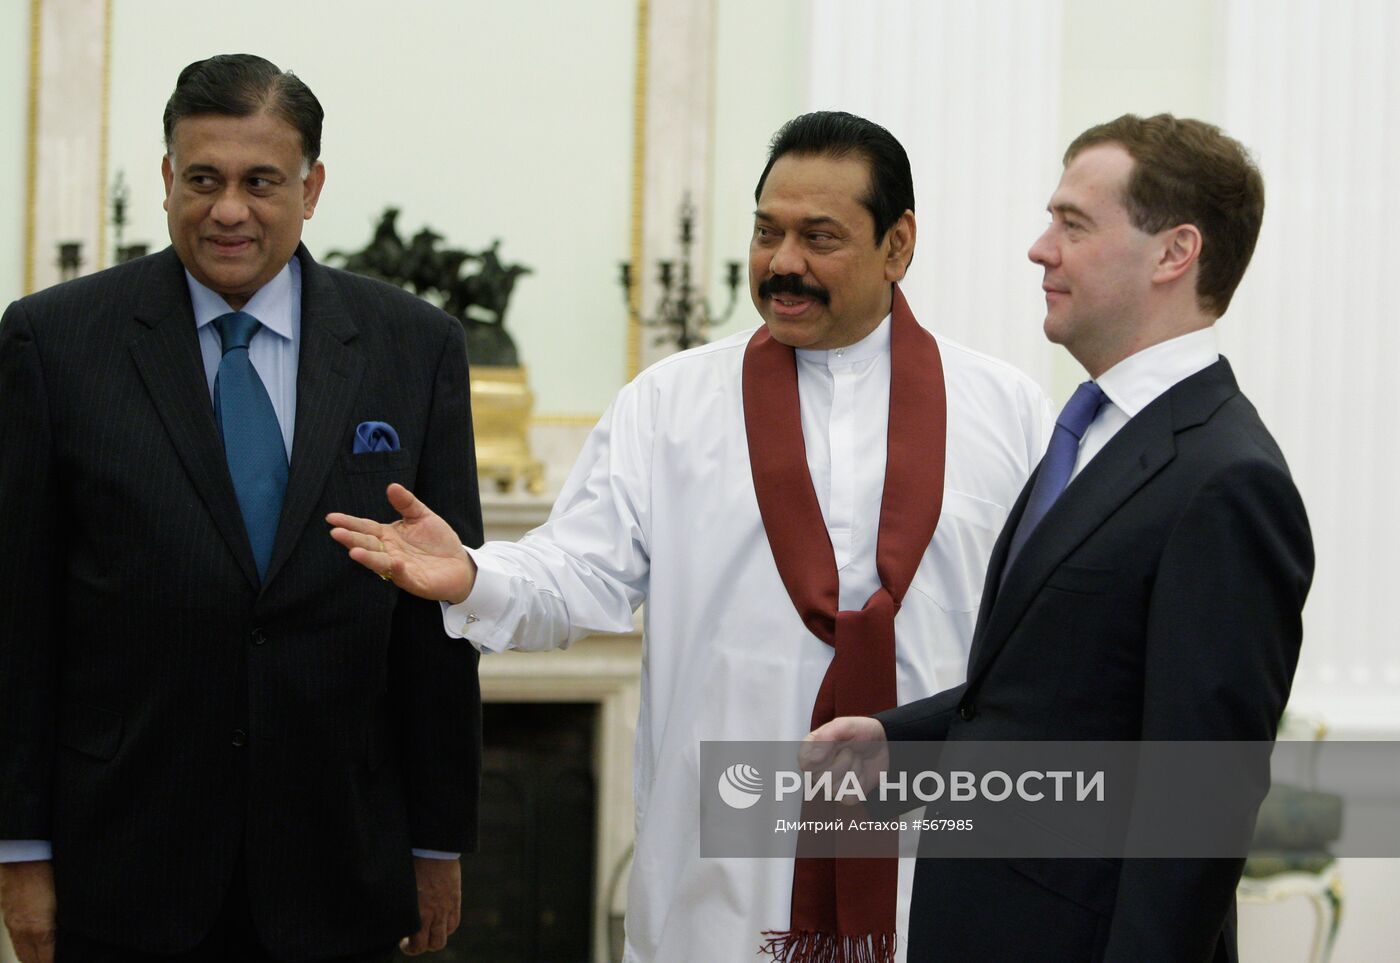 Дмитрий Медведев провел встречу с Махиндой Раджапаксе